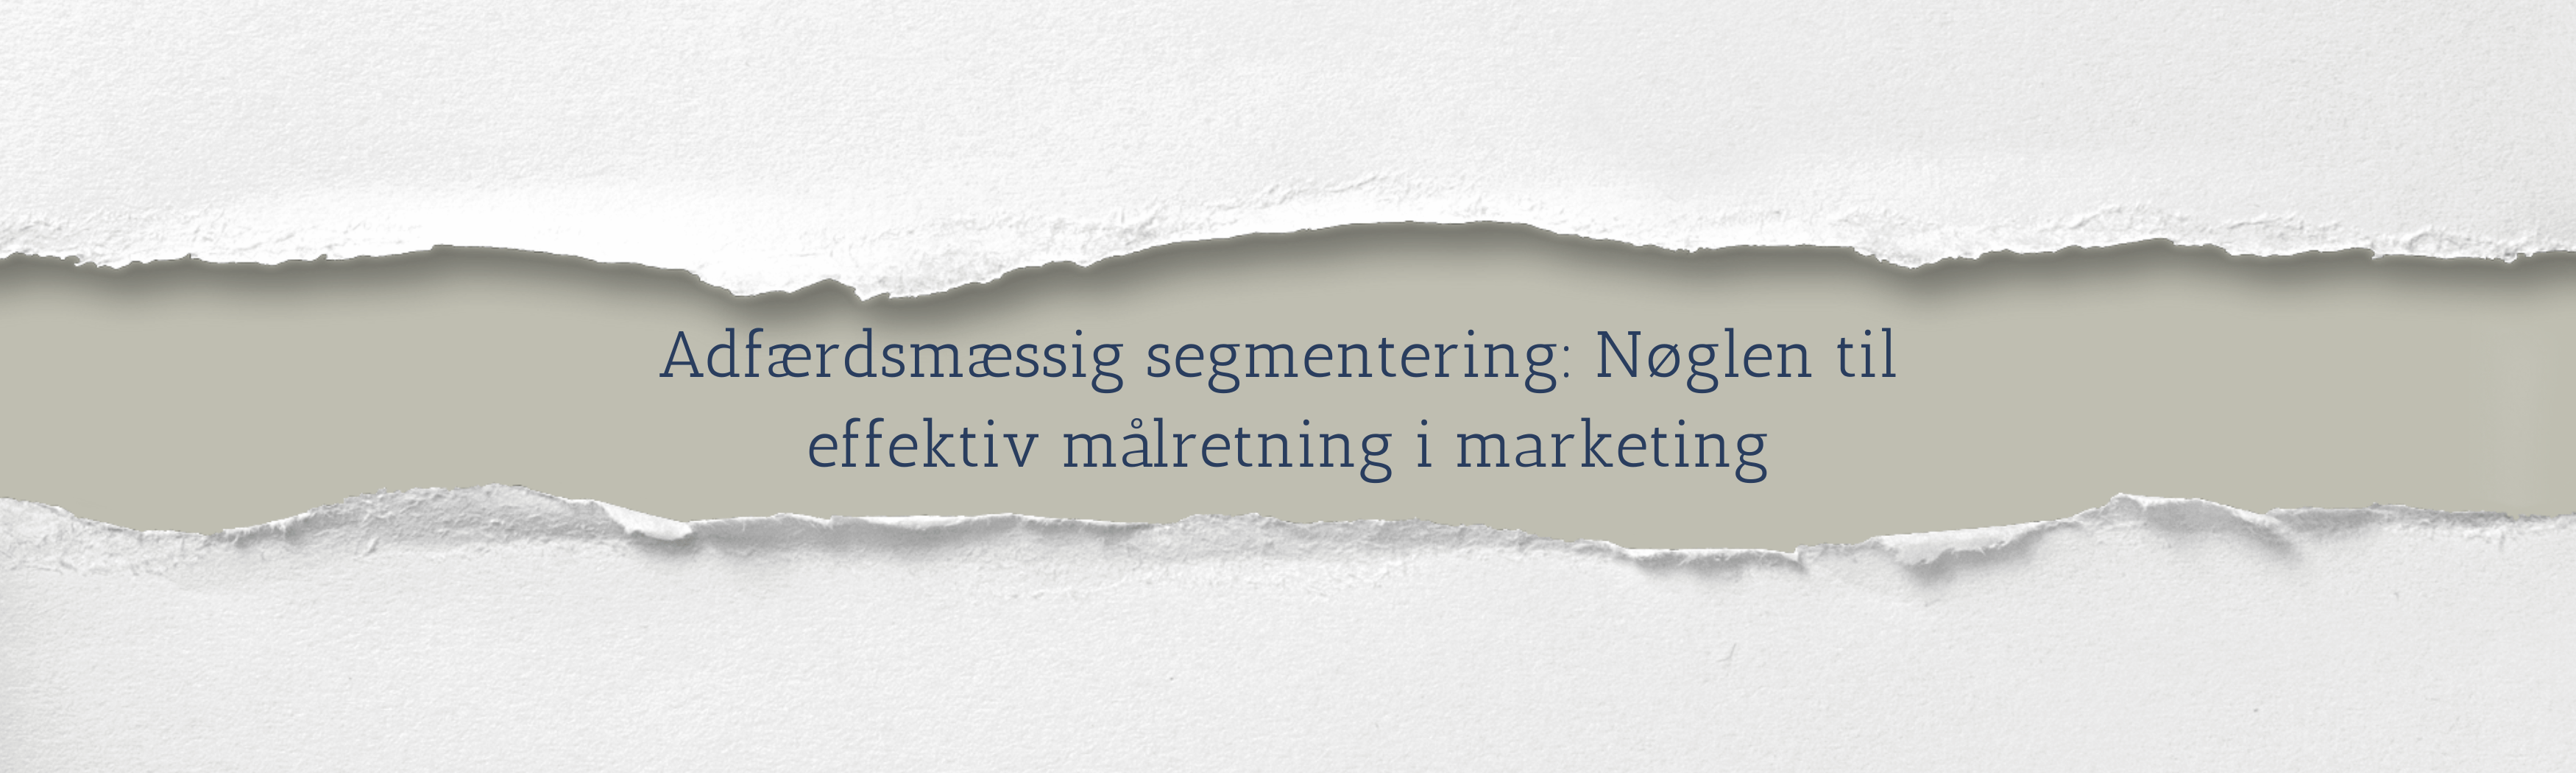 Adfærdsmæssig segmentering: Nøglen til effektiv målretning i marketing